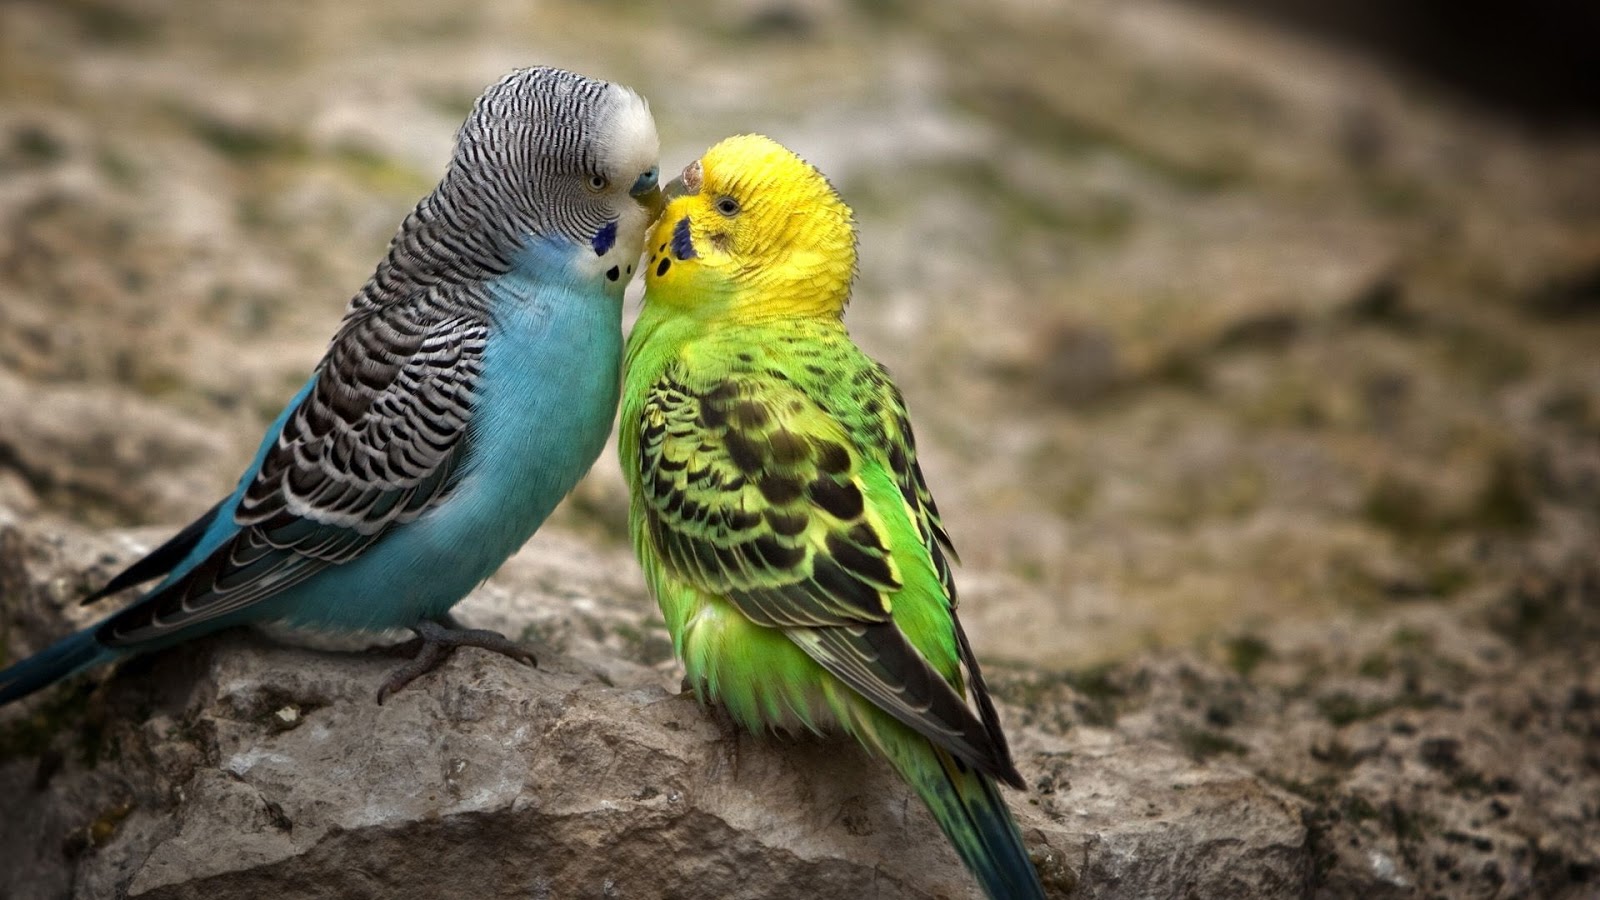 best animal wallpaper,bird,parakeet,budgie,vertebrate,parrot